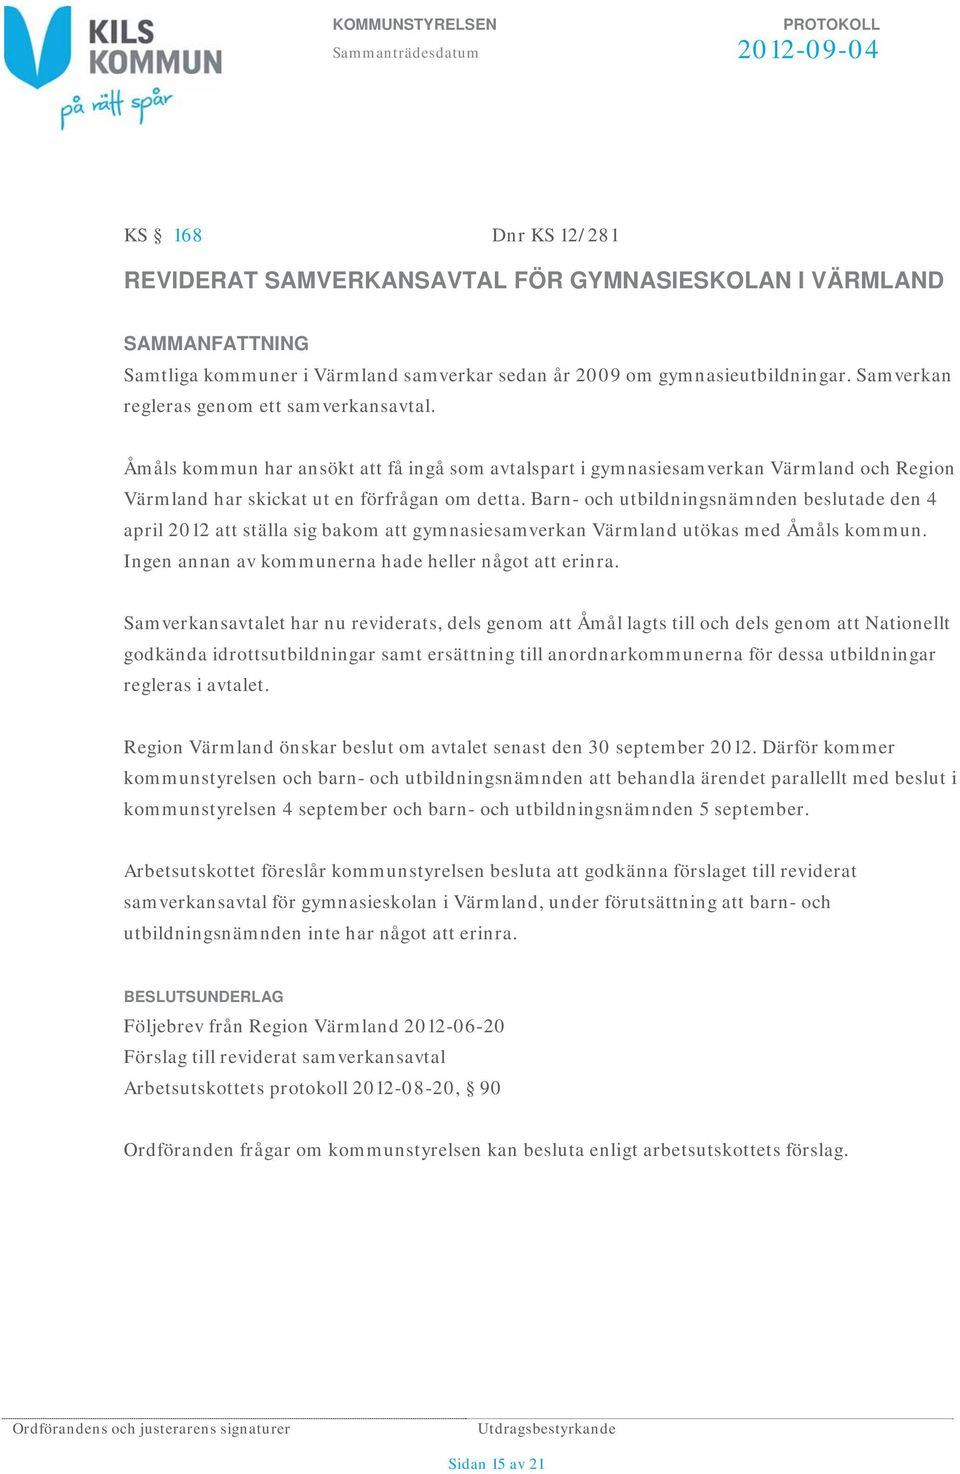 Barn- och utbildningsnämnden beslutade den 4 april 2012 att ställa sig bakom att gymnasiesamverkan Värmland utökas med Åmåls kommun. Ingen annan av kommunerna hade heller något att erinra.